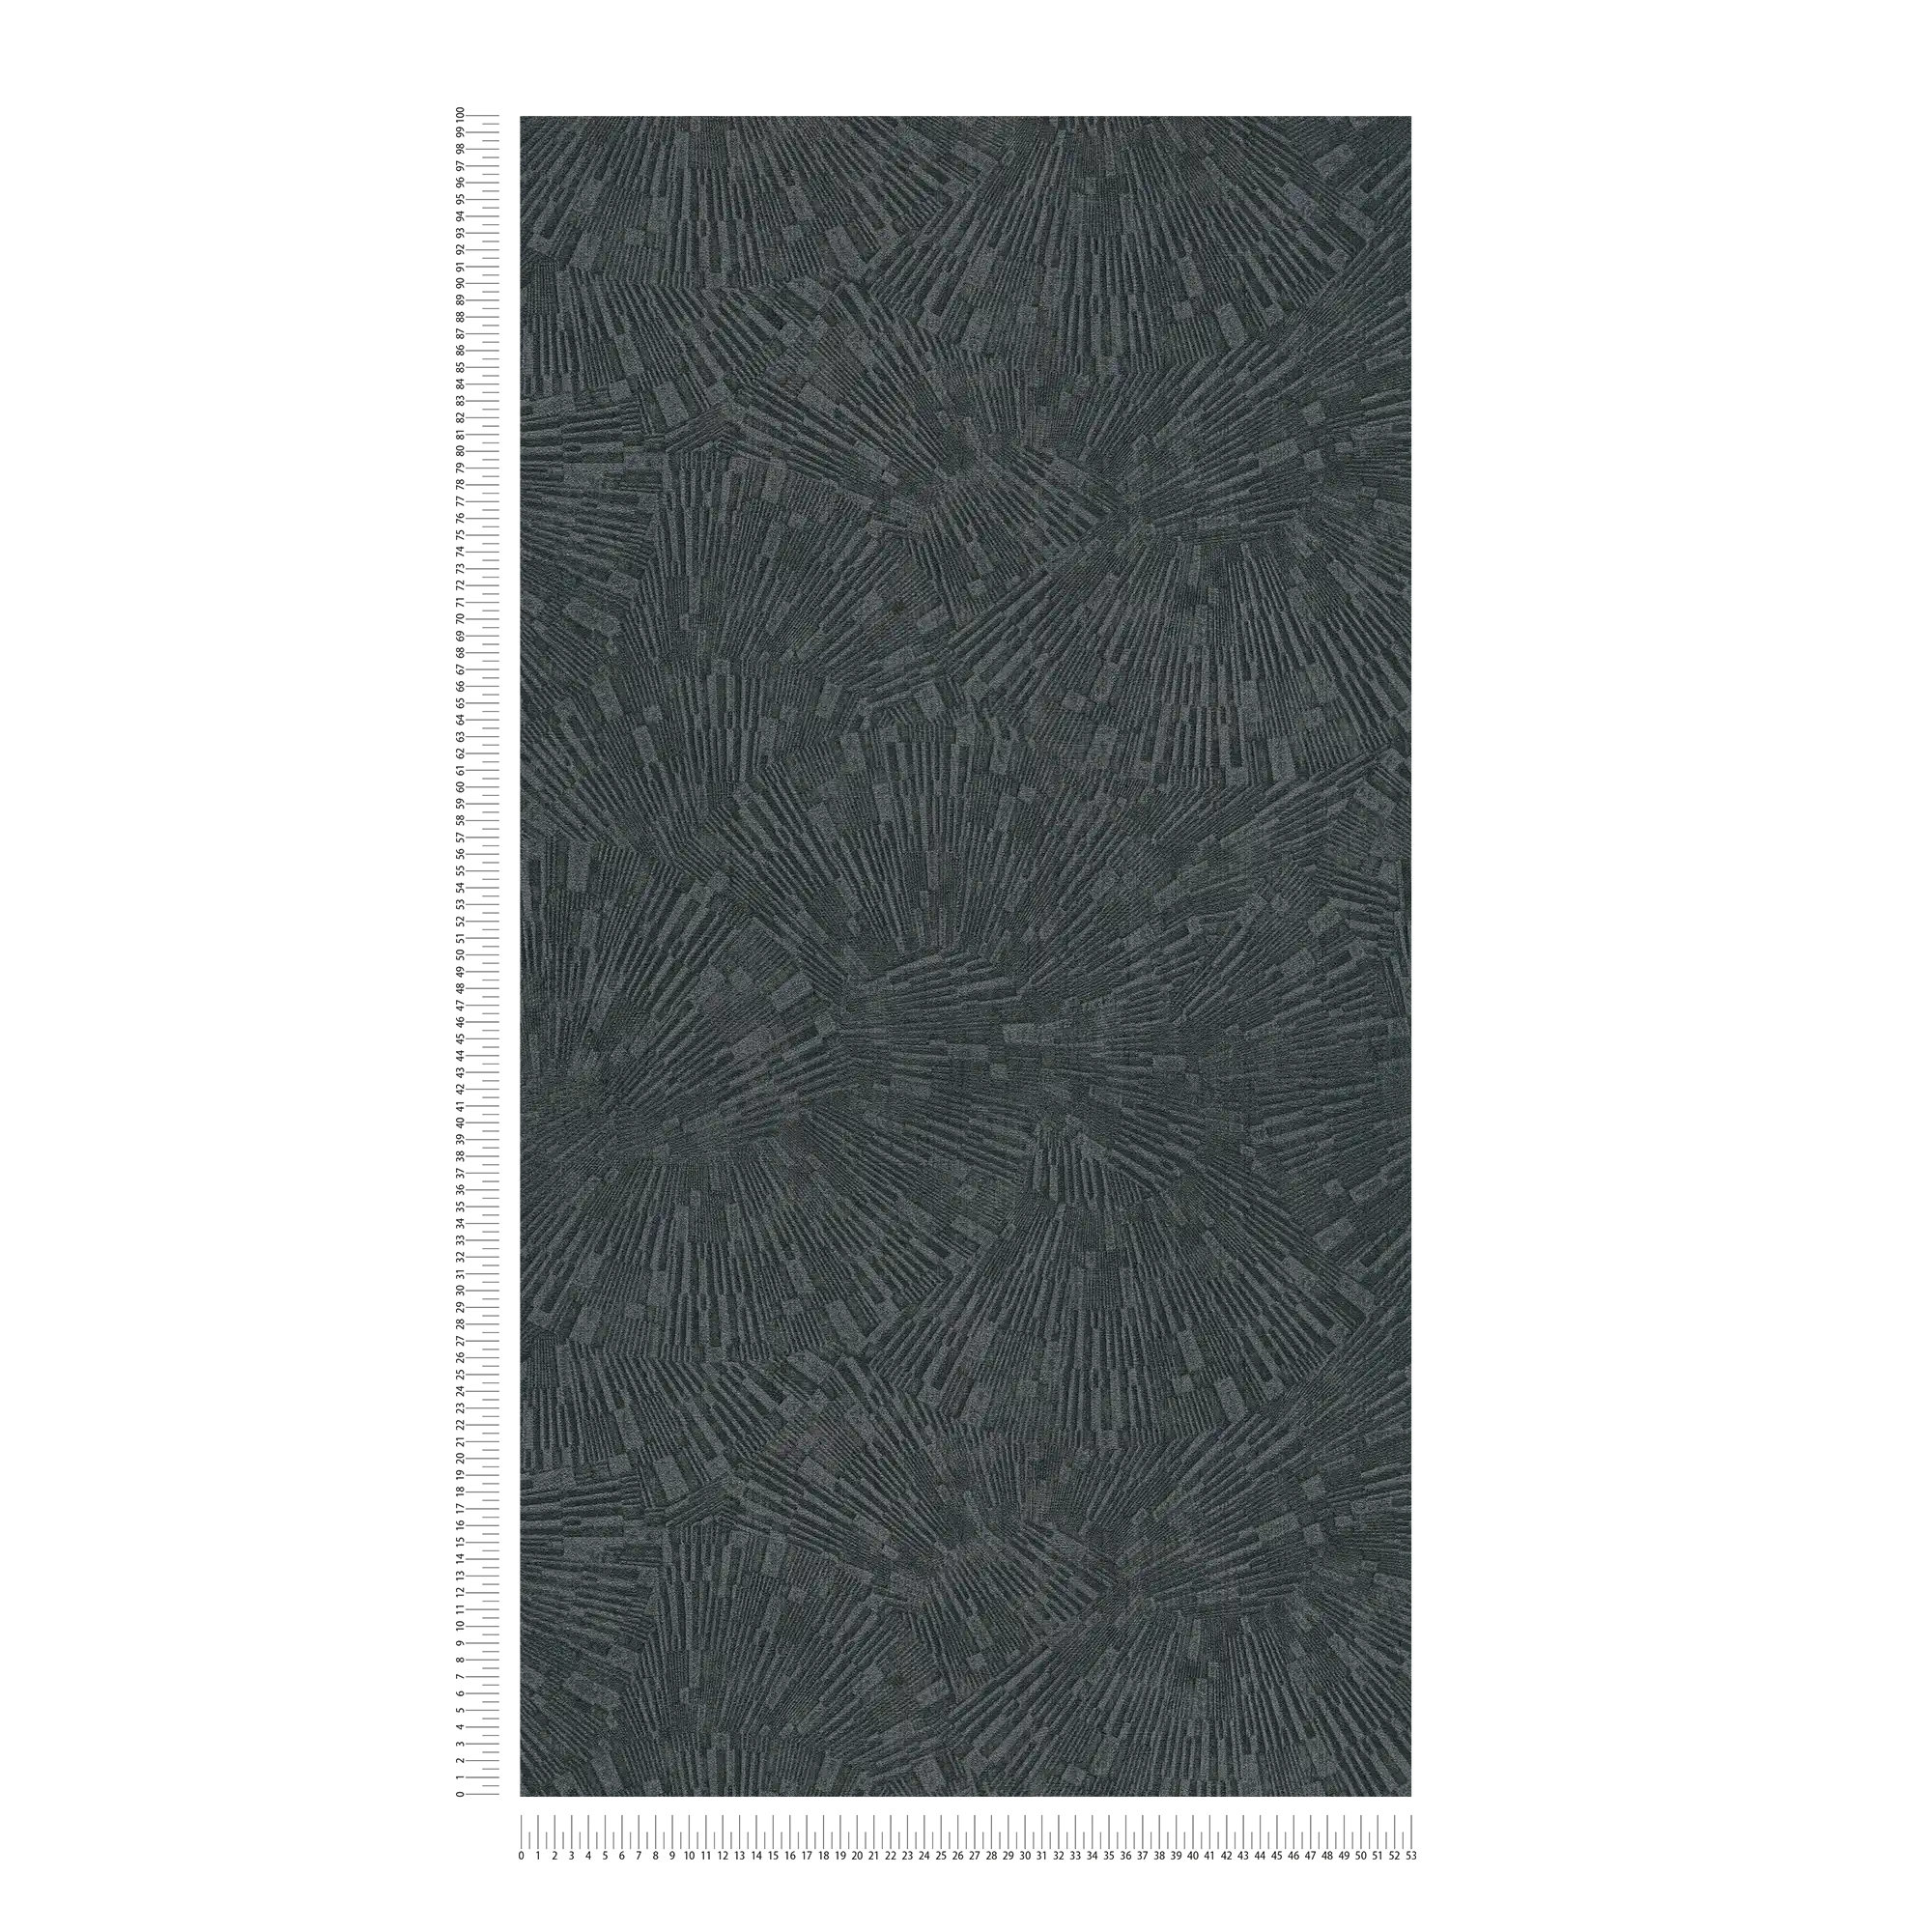             Papel pintado negro brillante con efecto de textura - Marrón, Negro
        